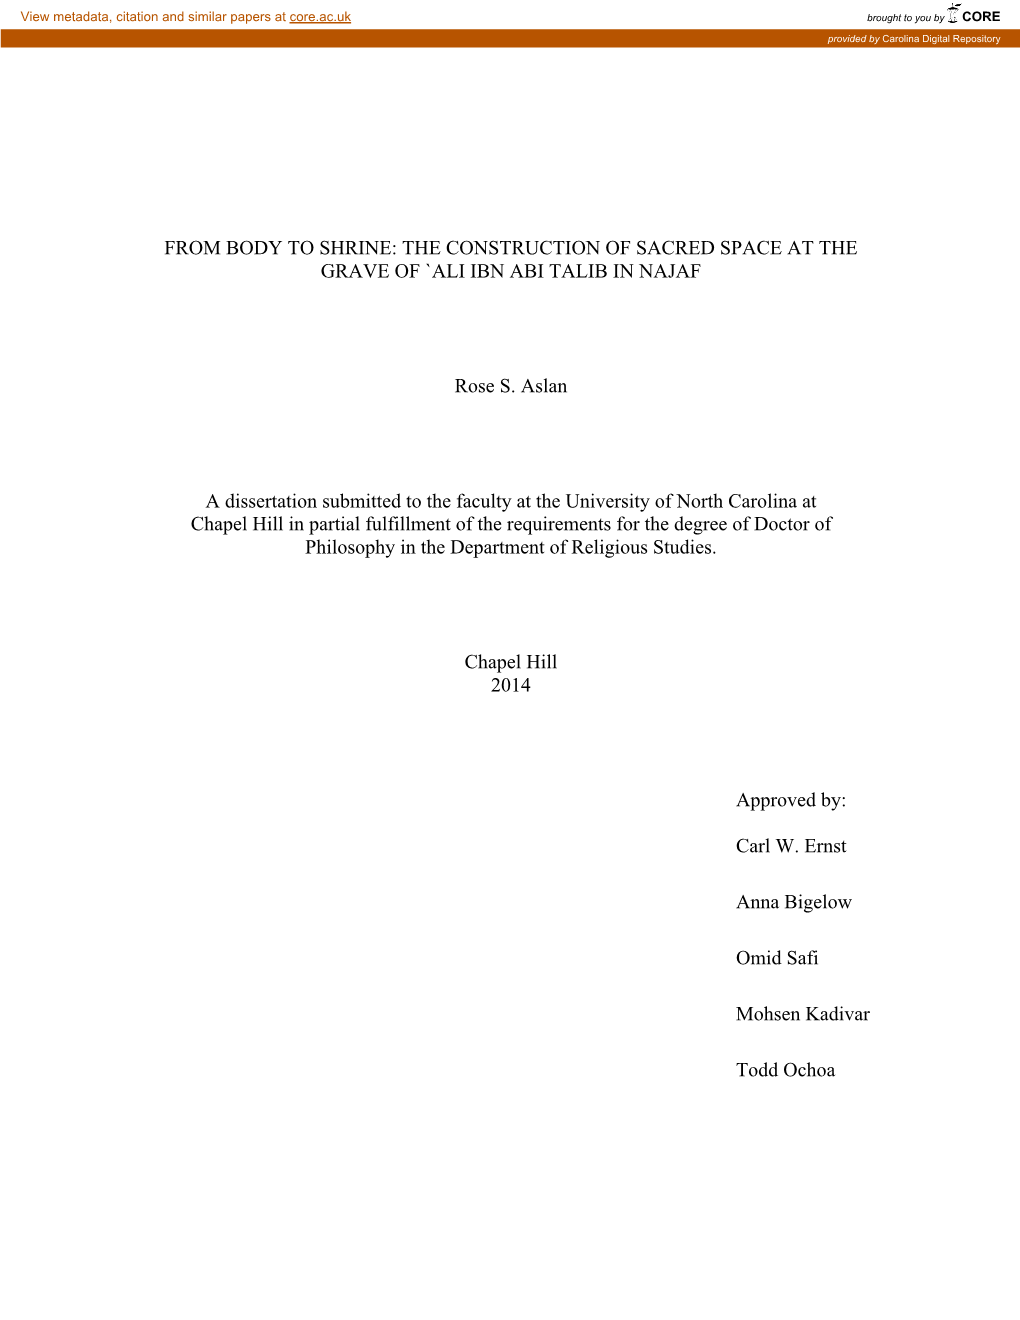 Aslan Completed Dissertation, Final Edit